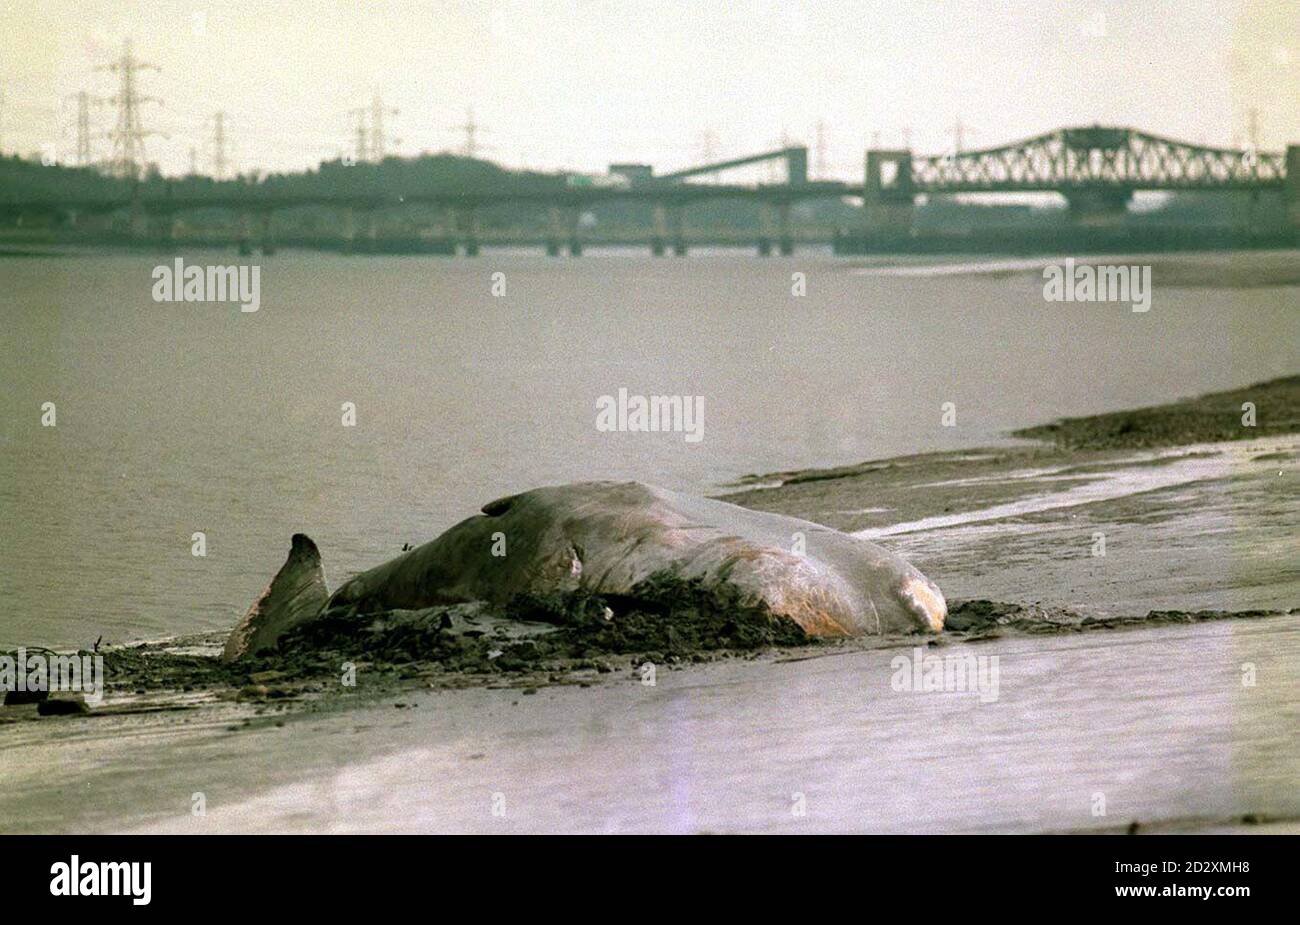 Moby a 40 metri e pesando   tonnellate la balena spermatica giace morto sulle rive del quarto di fronte verso il Ponte di kincardine oggi (Lunedi). Vedere PA Story ENVIRONMENT Whale. Foto PA Foto Stock